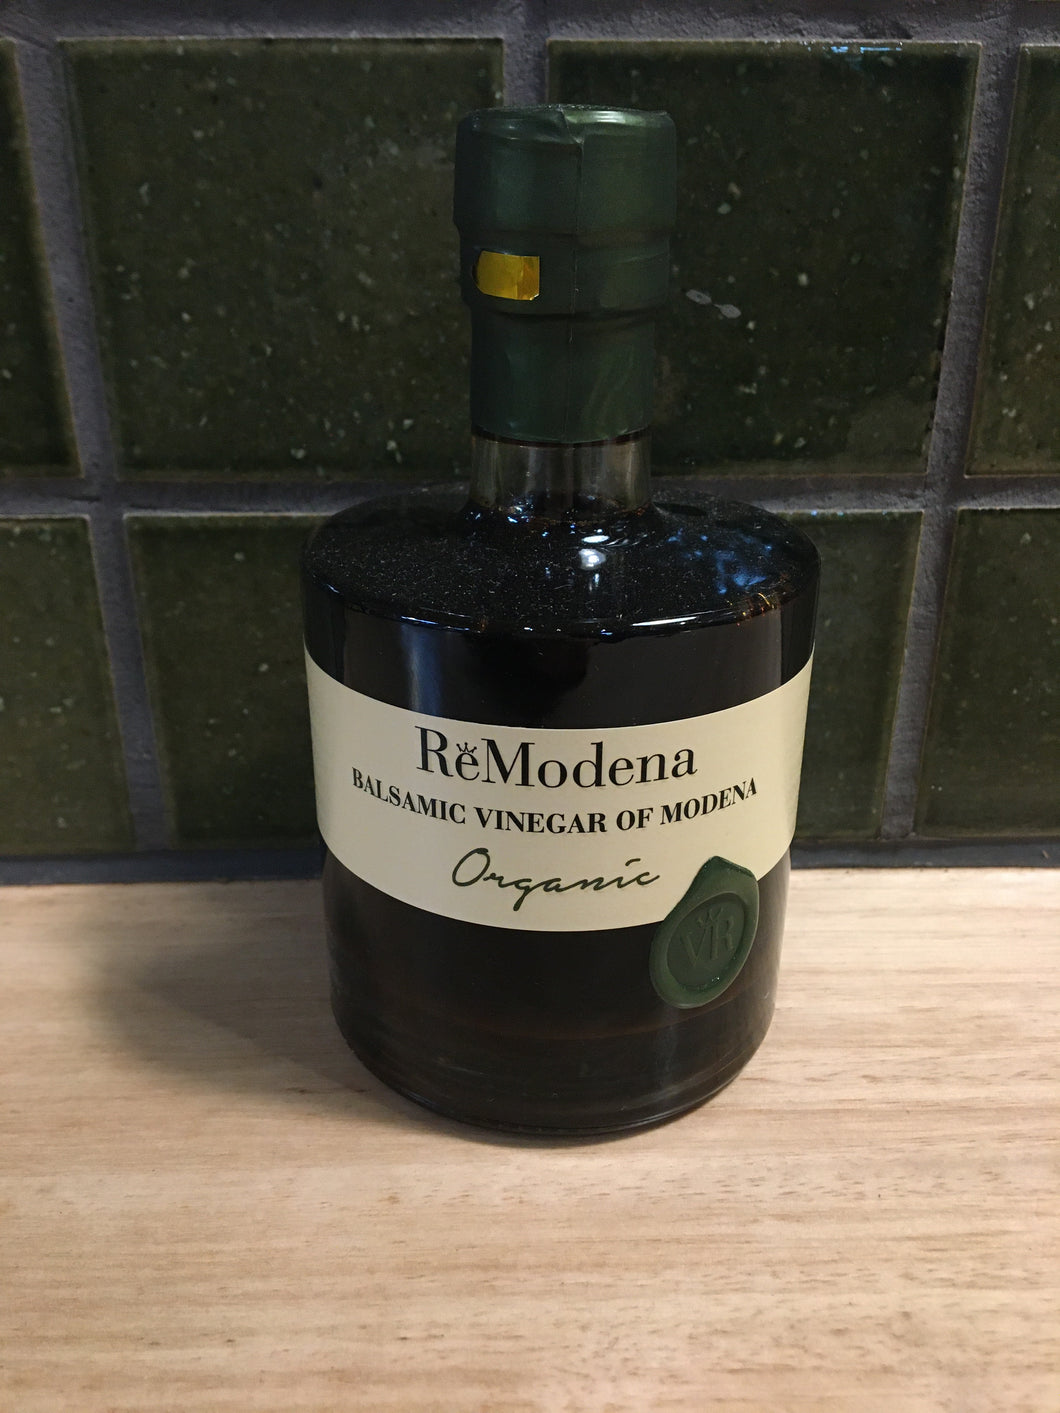 ReModerna Balsamic Vinegar of Moderna Organic 250mL